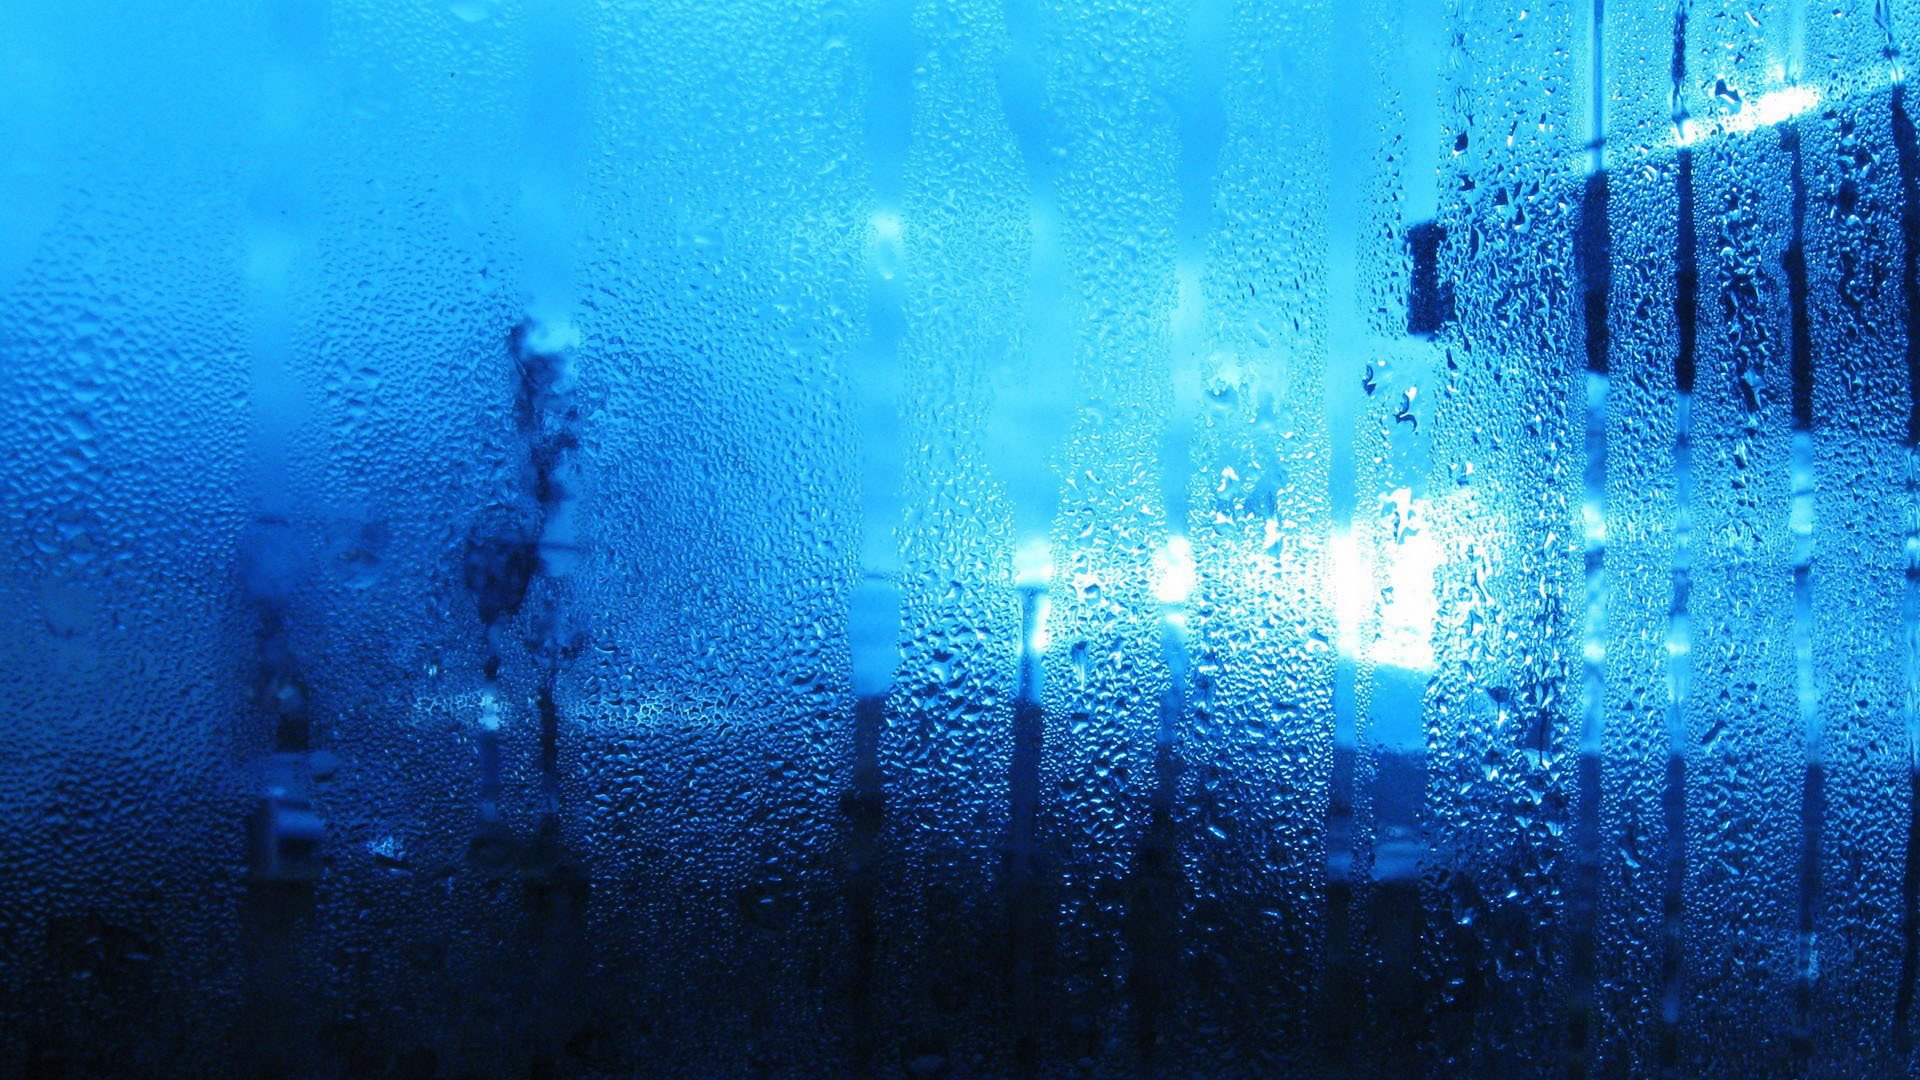 В стене капает вода. Капли на стекле. Стекло текстура. Стена воды. Синий дождь.